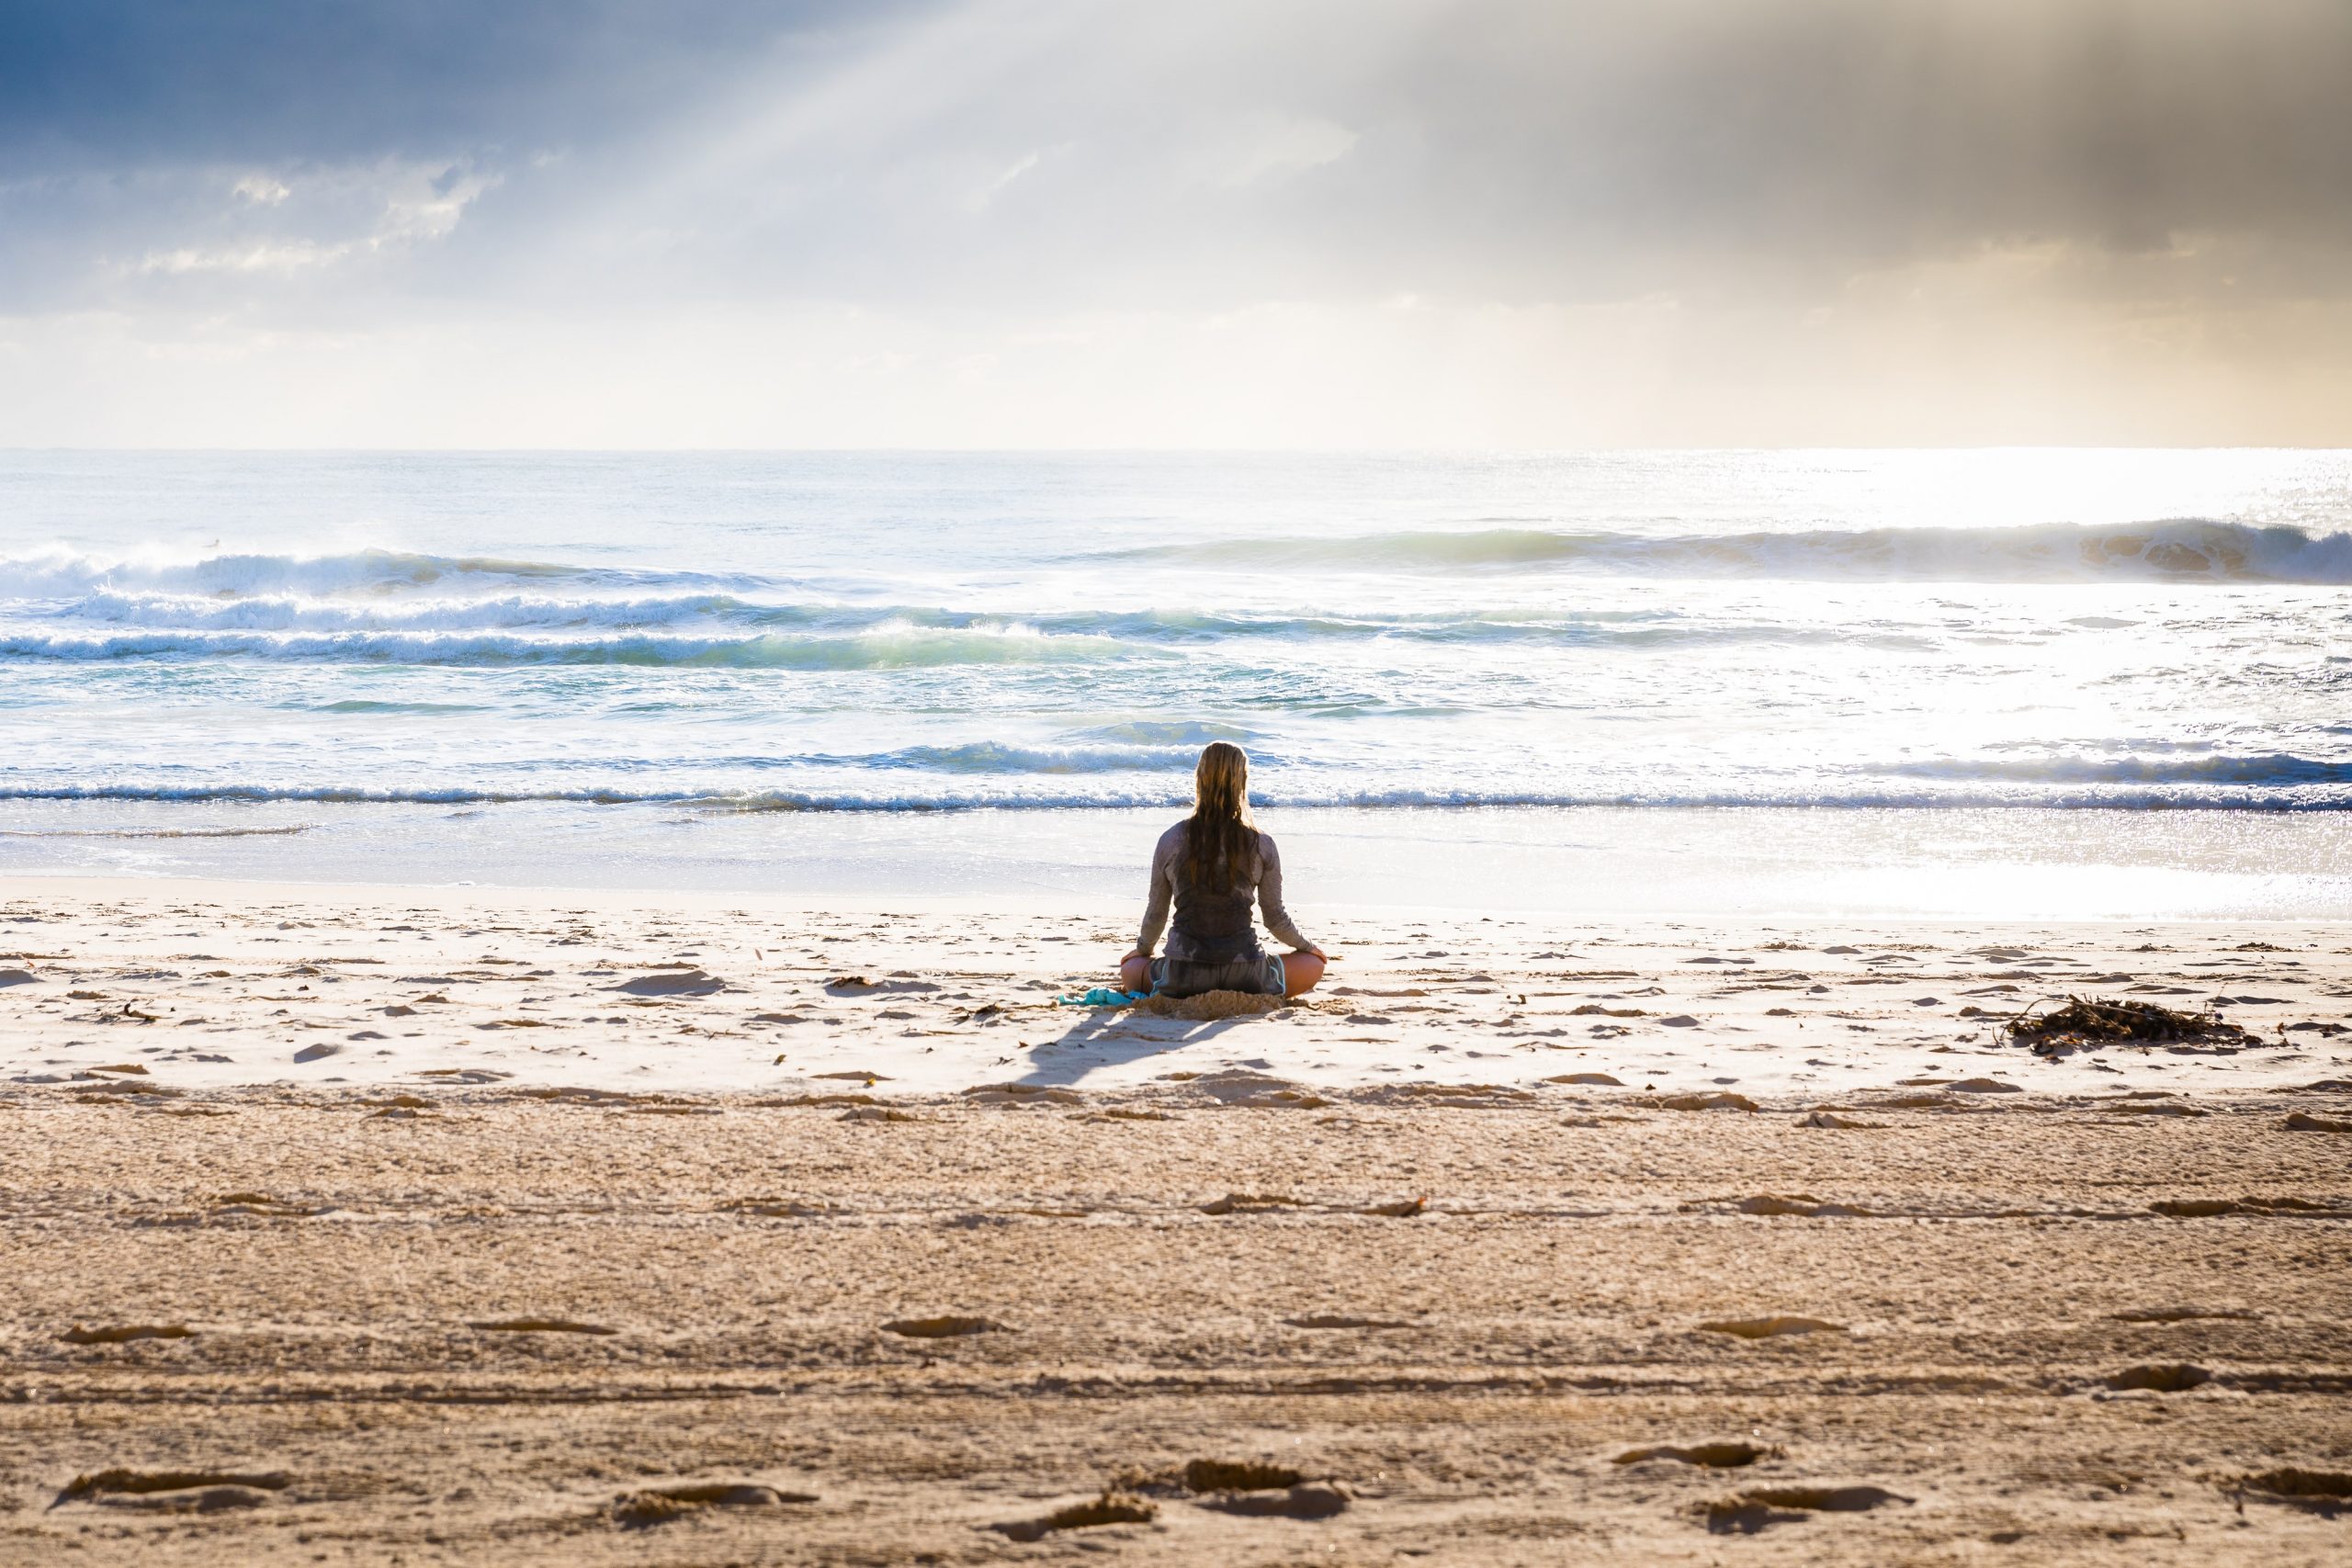 Is a fit mind like mindfulness and meditation?